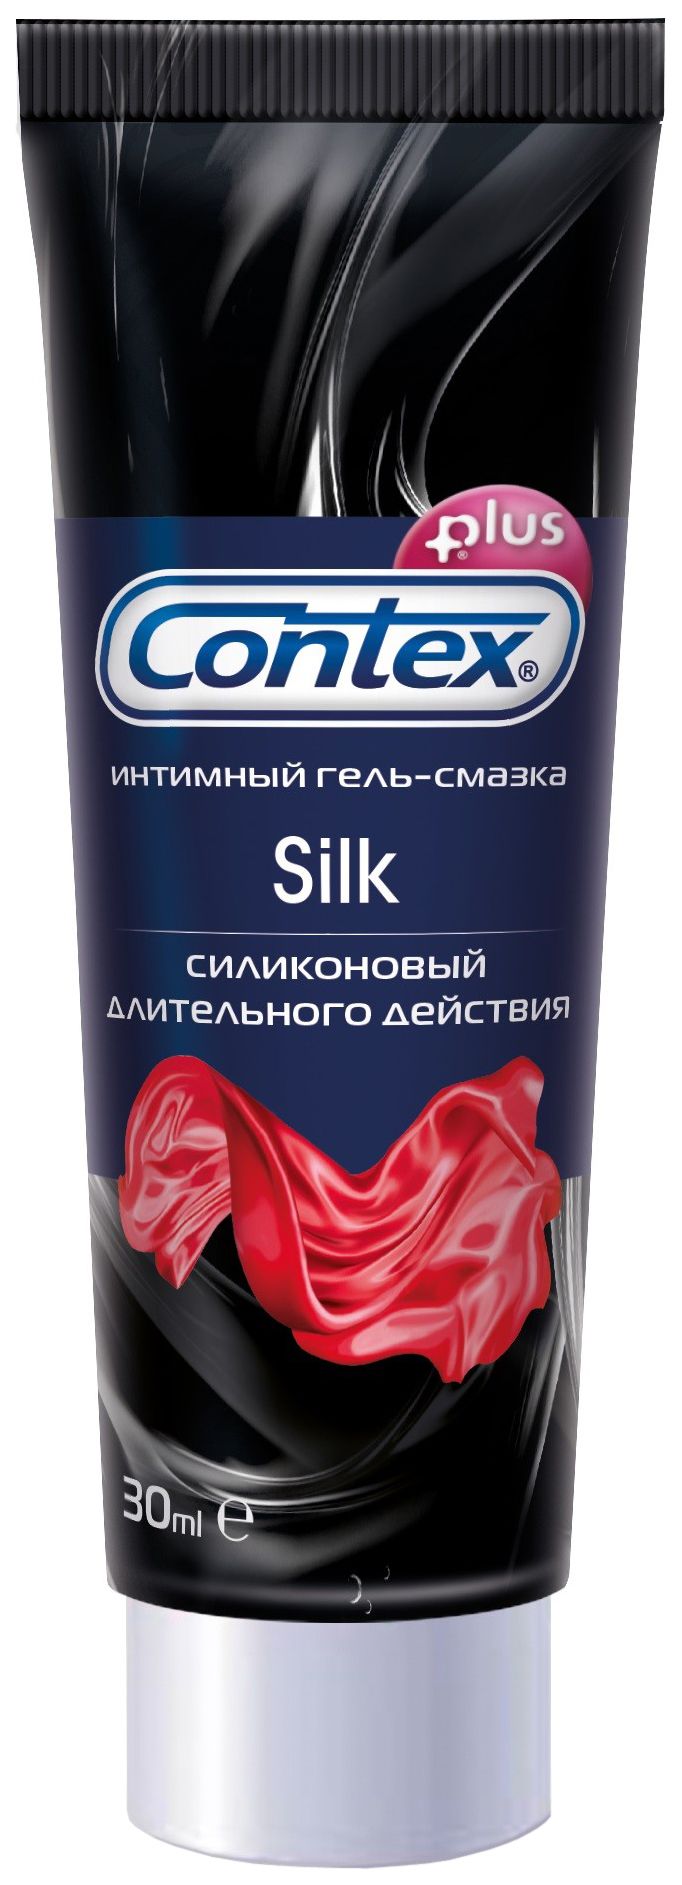 фото упаковки Гель-смазка Contex Silk